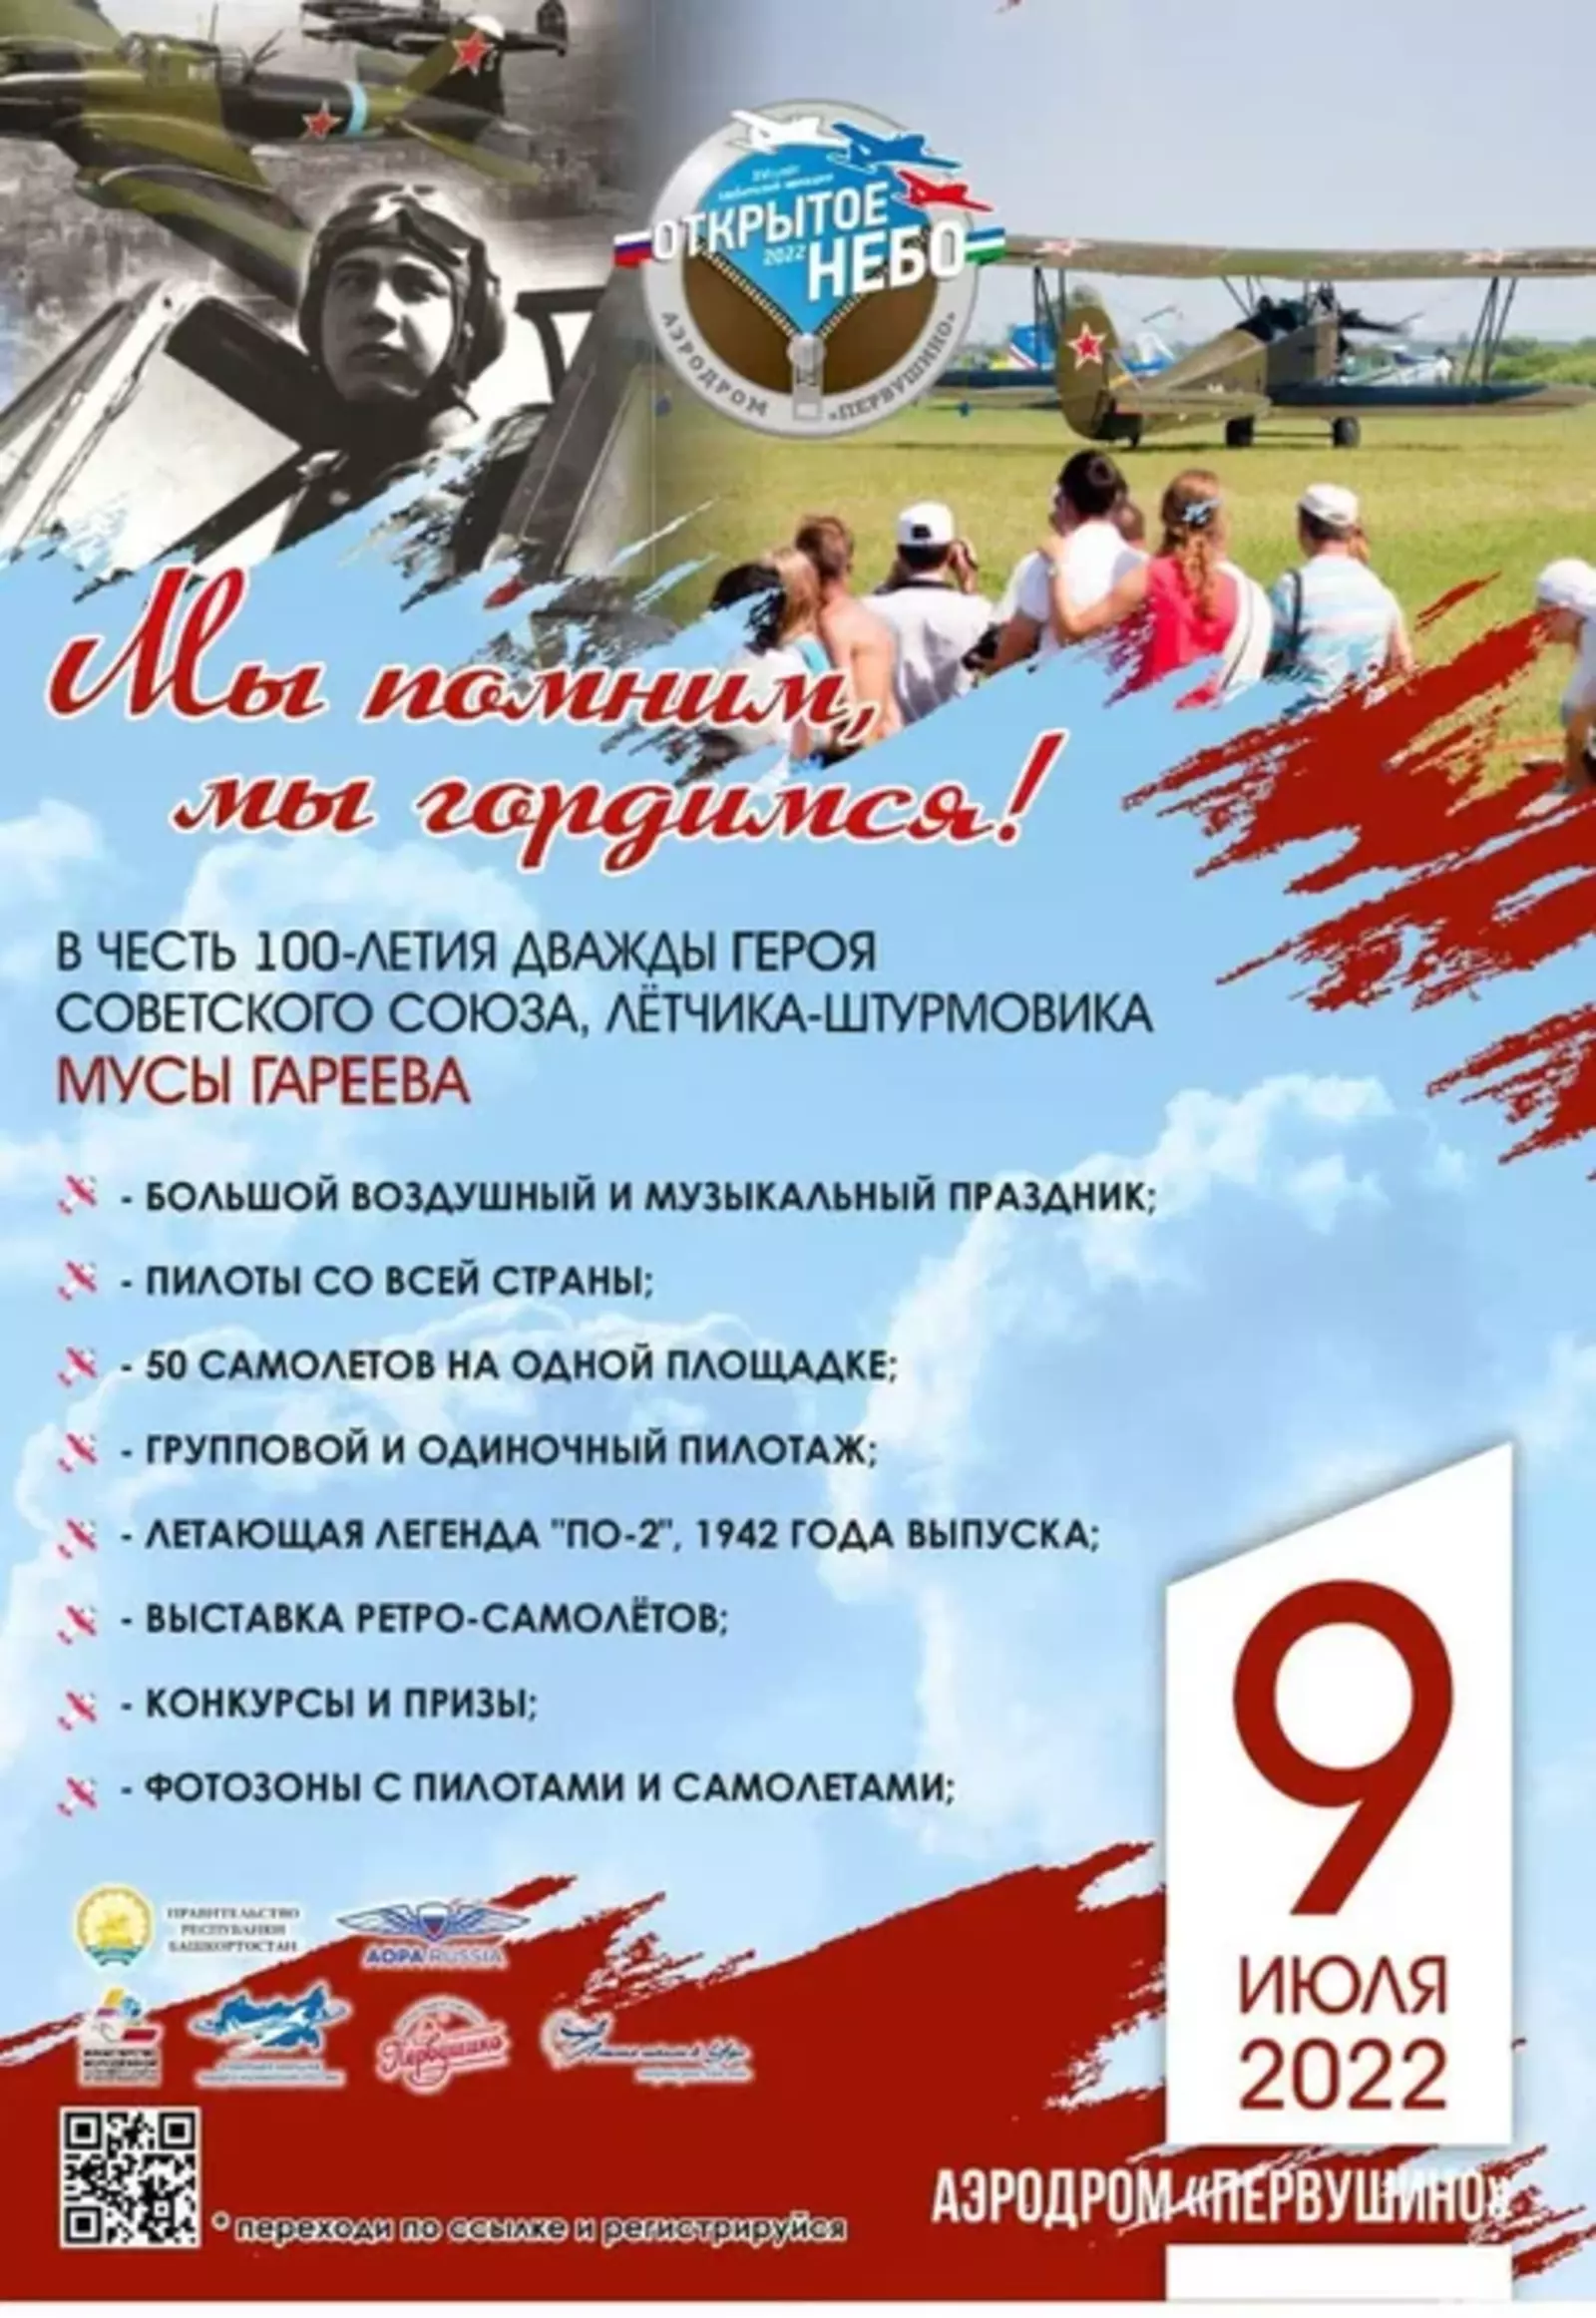 9 июля в субботу на аэродроме “Первушино” состоится большой авиационный праздник